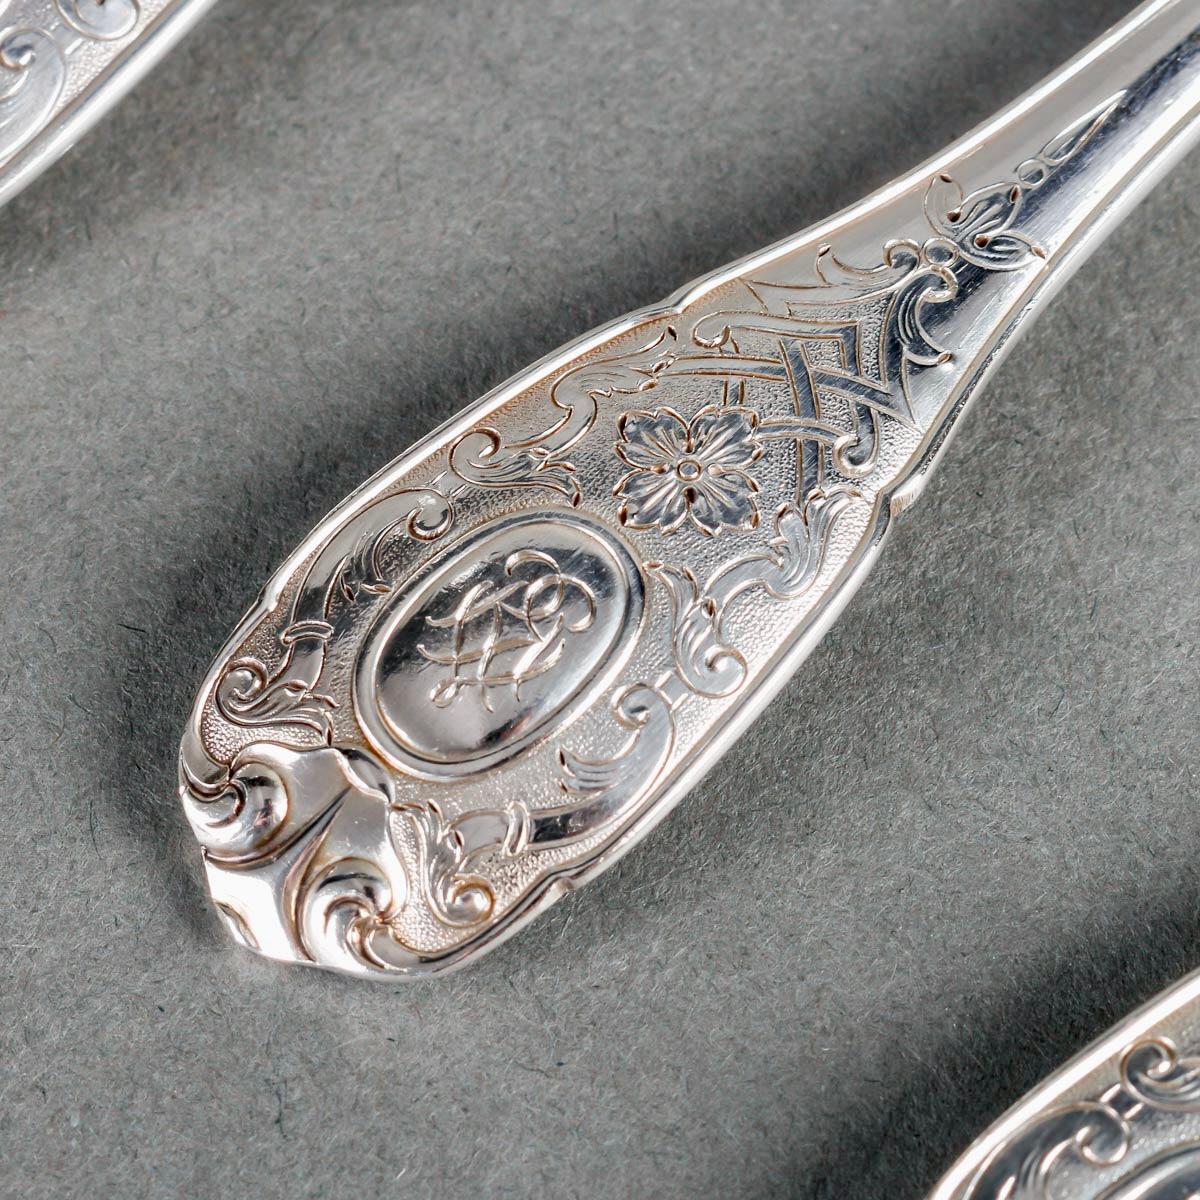 Puiforcat - Cutlery Flatware Set Elysee Sterling Silver & Vermeil - 127 Pieces 1